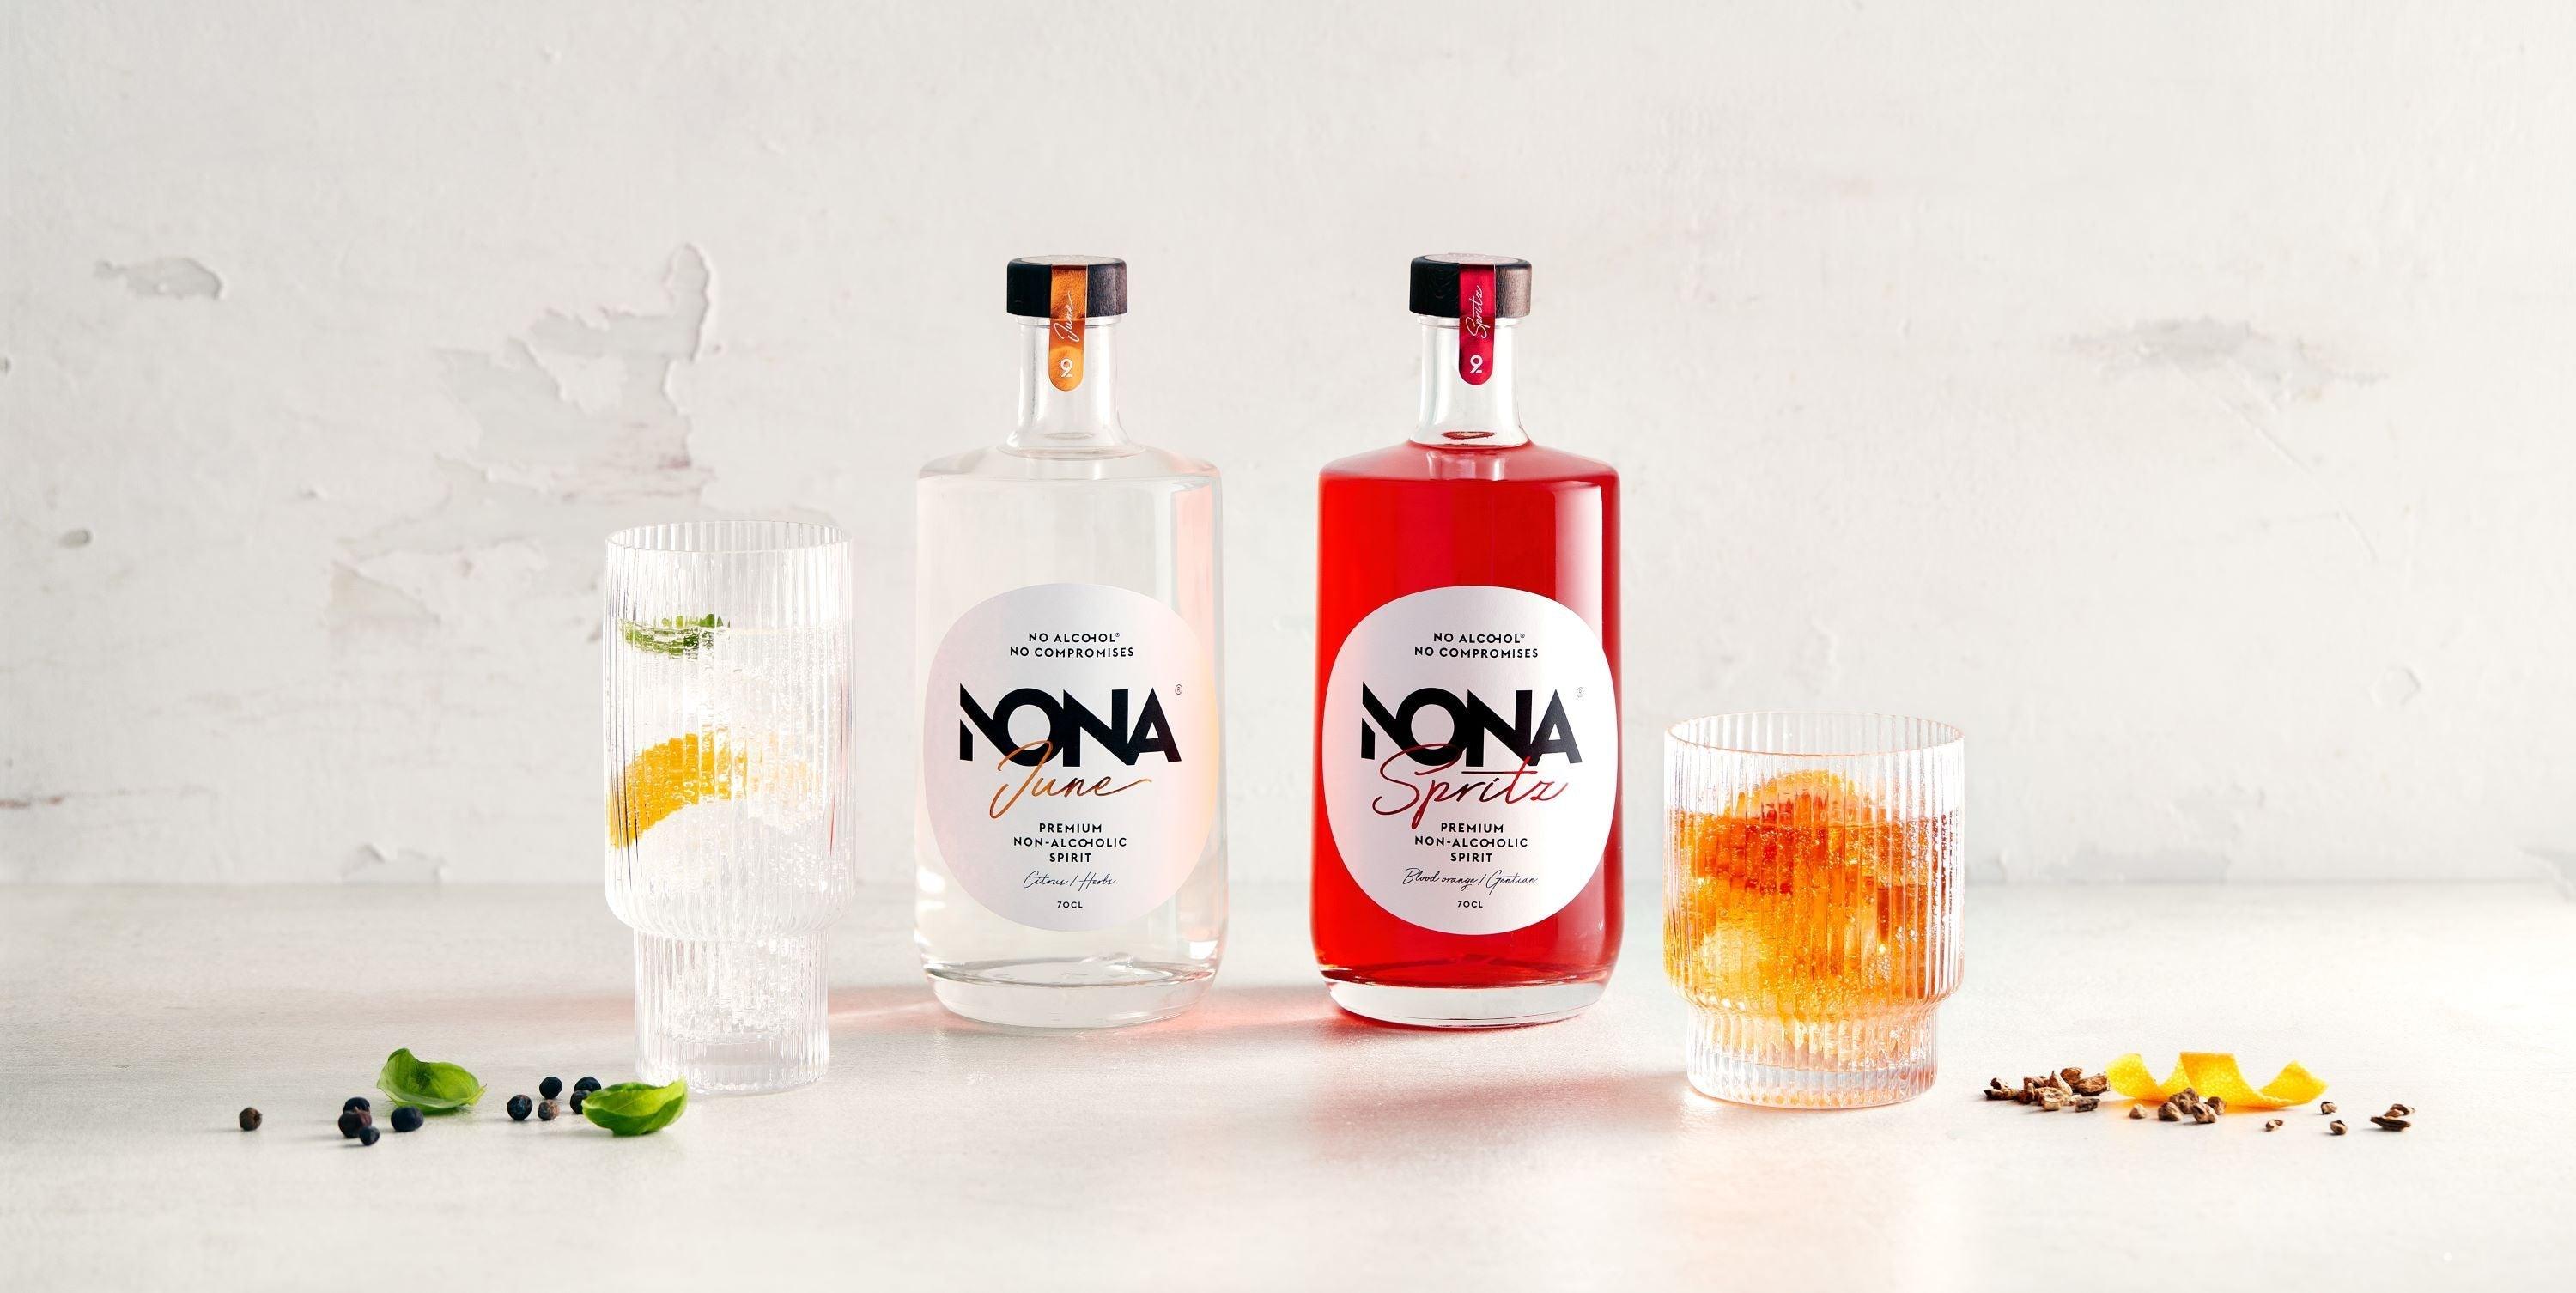 De alcoholvrije Nona Spritz en NONA gin met bijpassende cocktails.